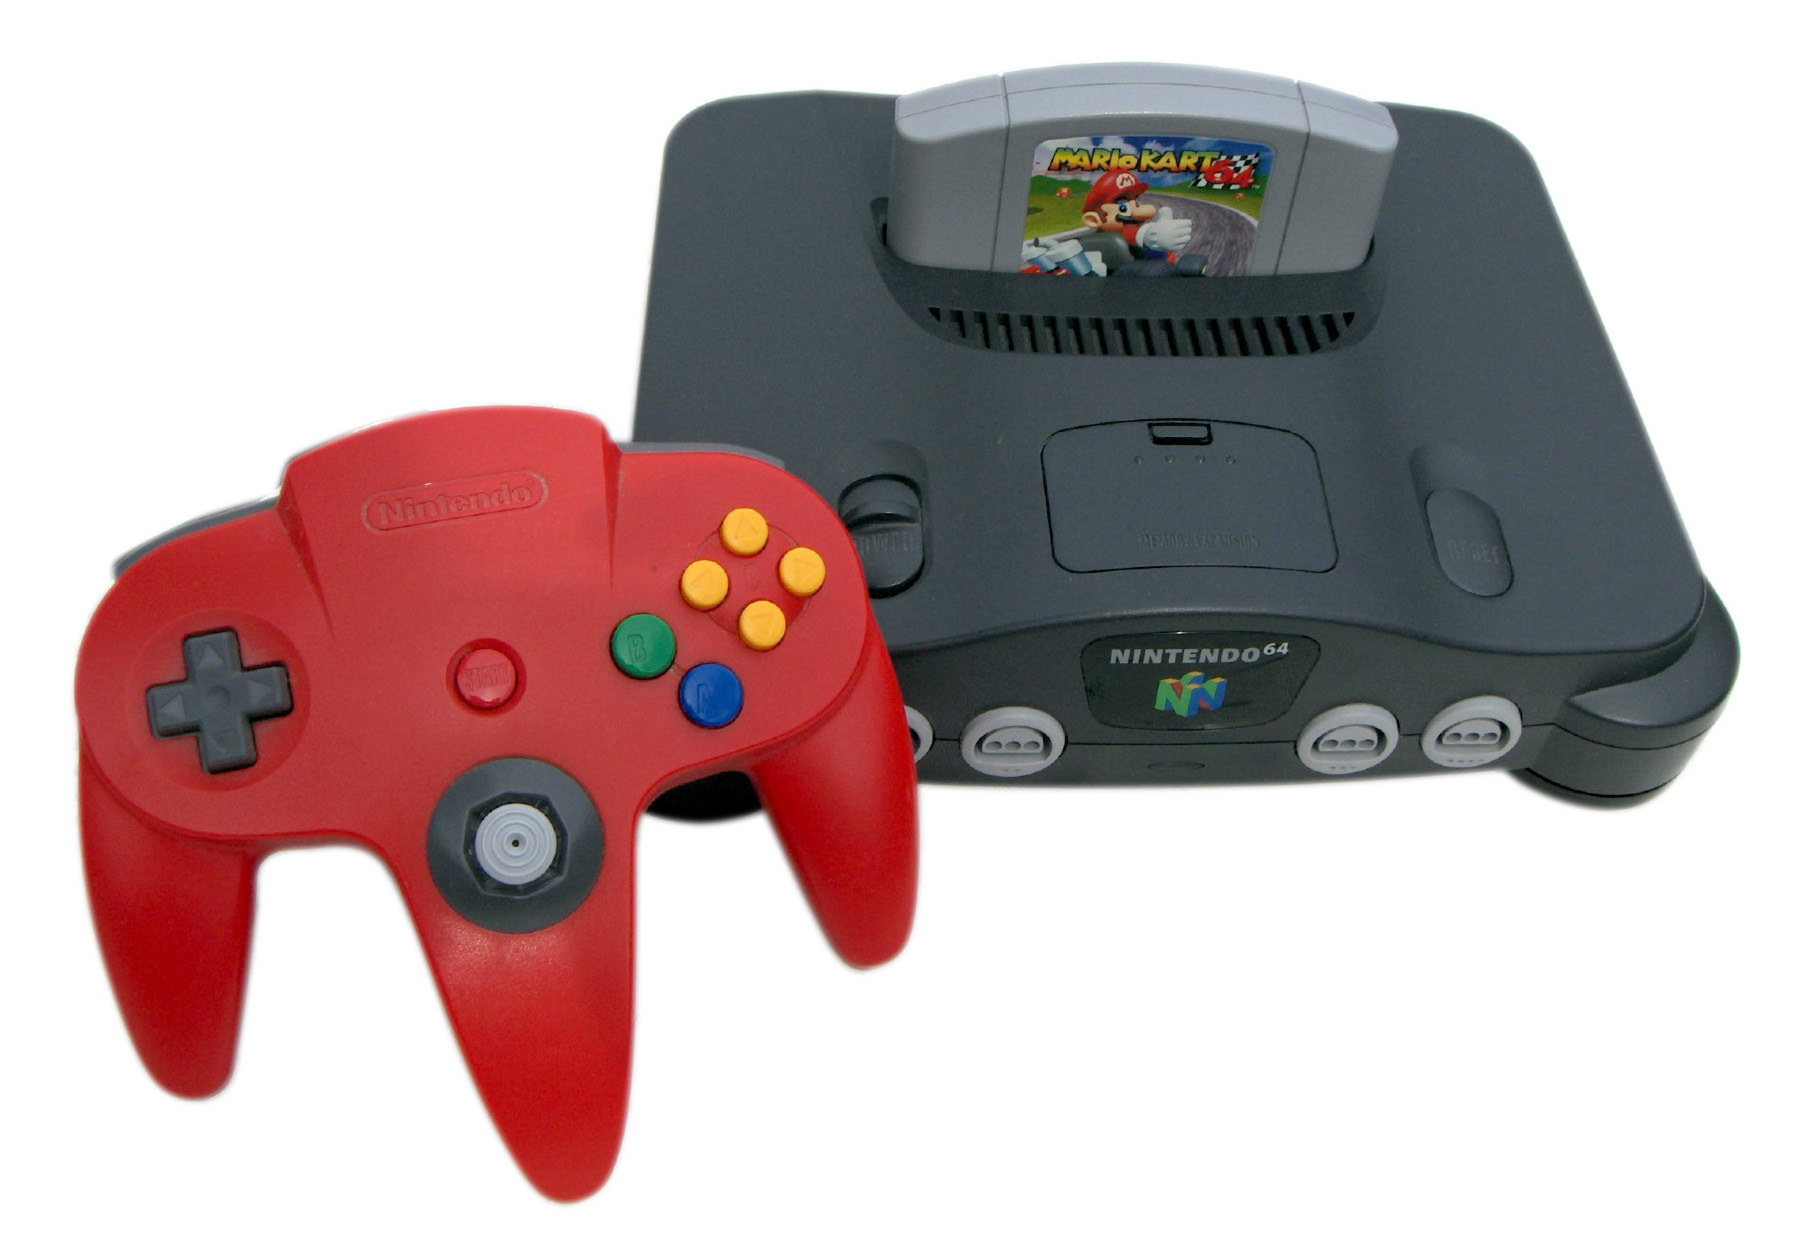 Nintendo 64 Wikitroid Fandom Powered By Wikia